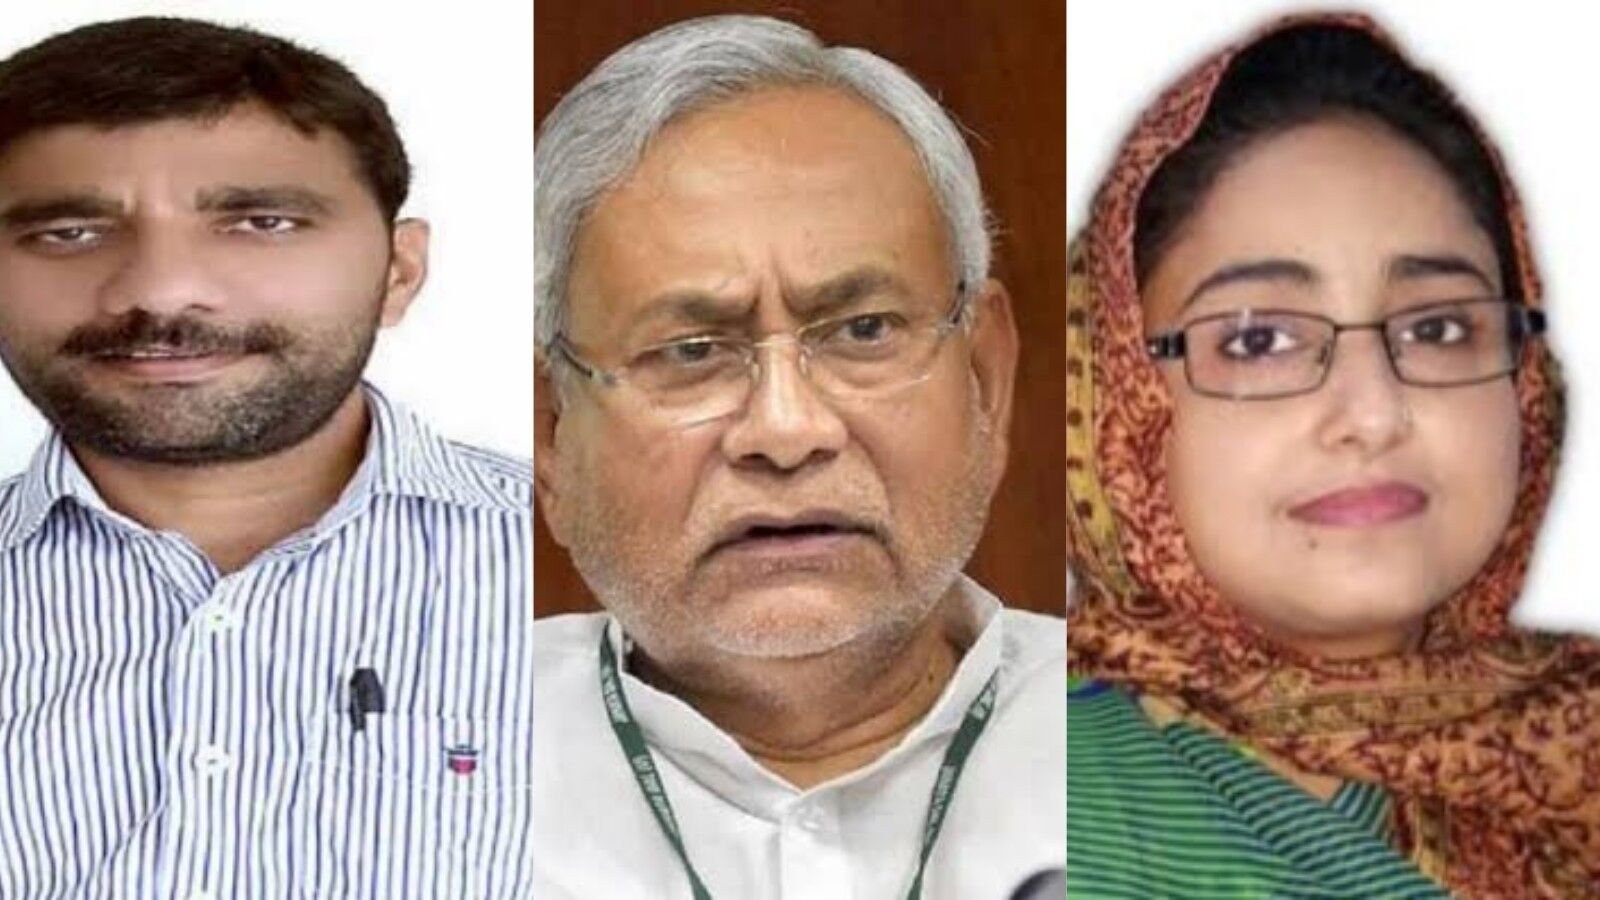 Bihar Panchayat Election : जेडीयू की विधानसभा इलेक्शन की प्रत्याशी हार गई पंचायत चुनाव, बाहुबली विधायक का भतीजा भी हारा